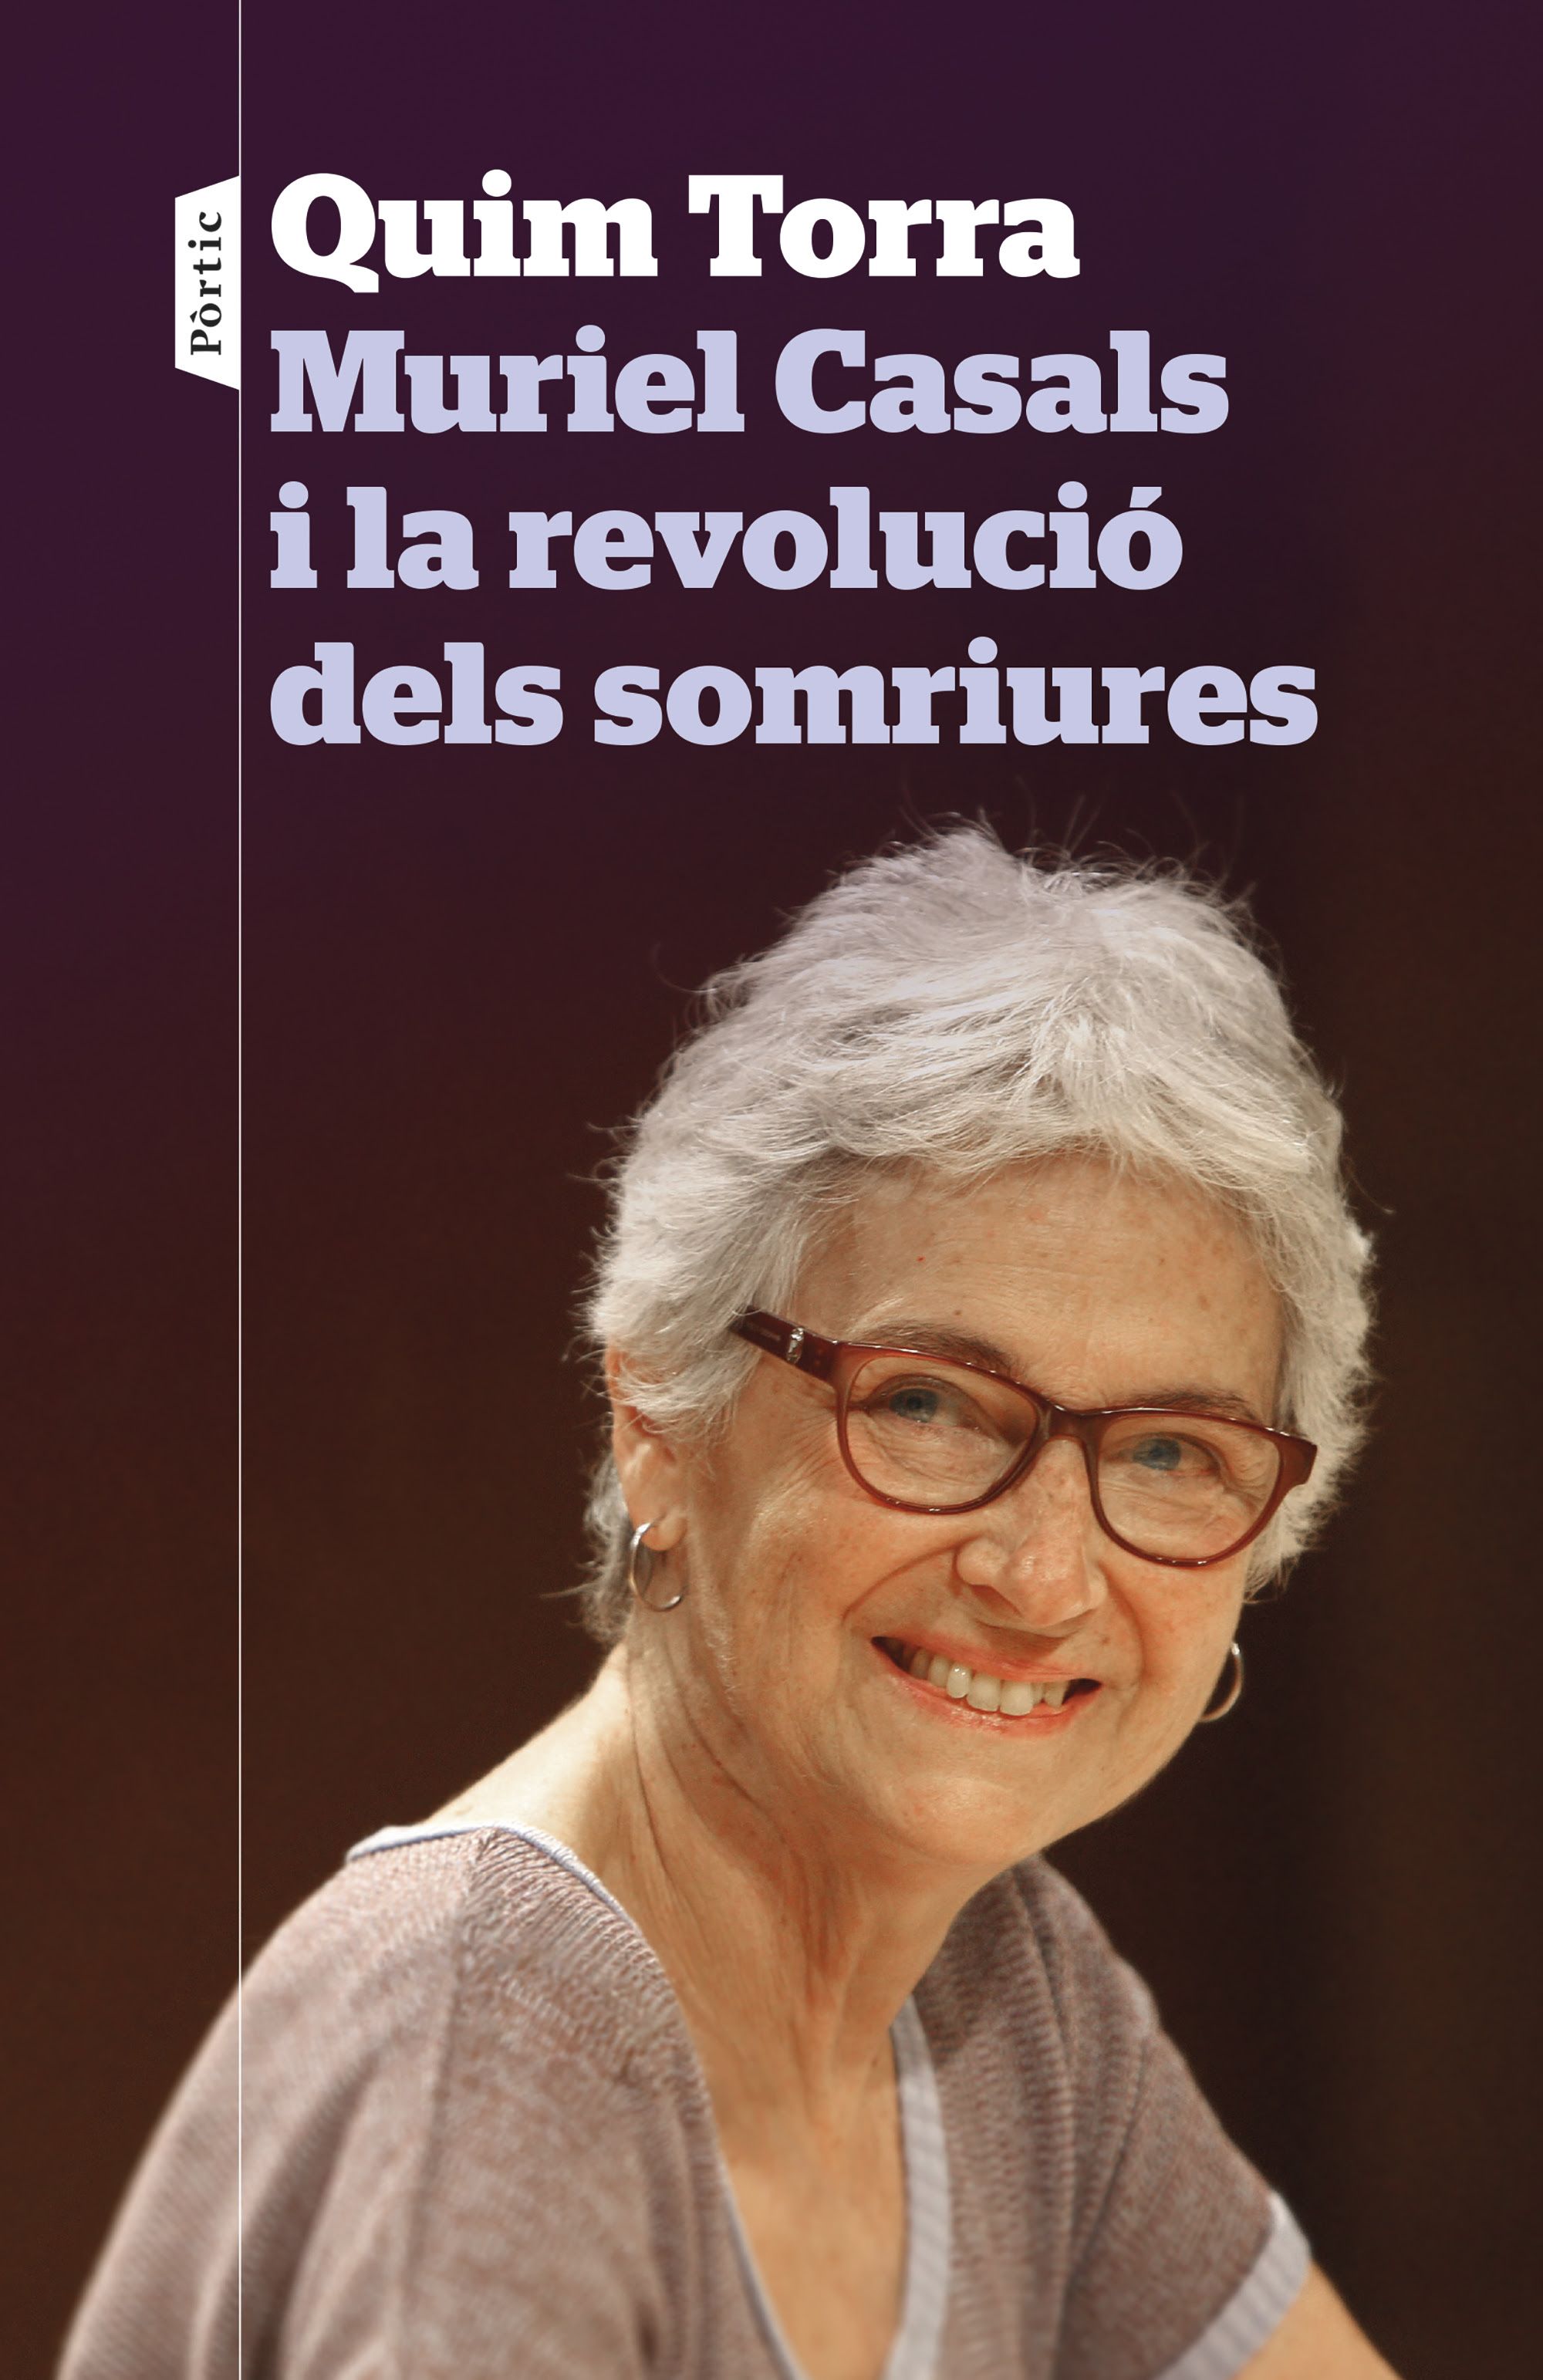 Muriel Casals i la revolució dels somriures